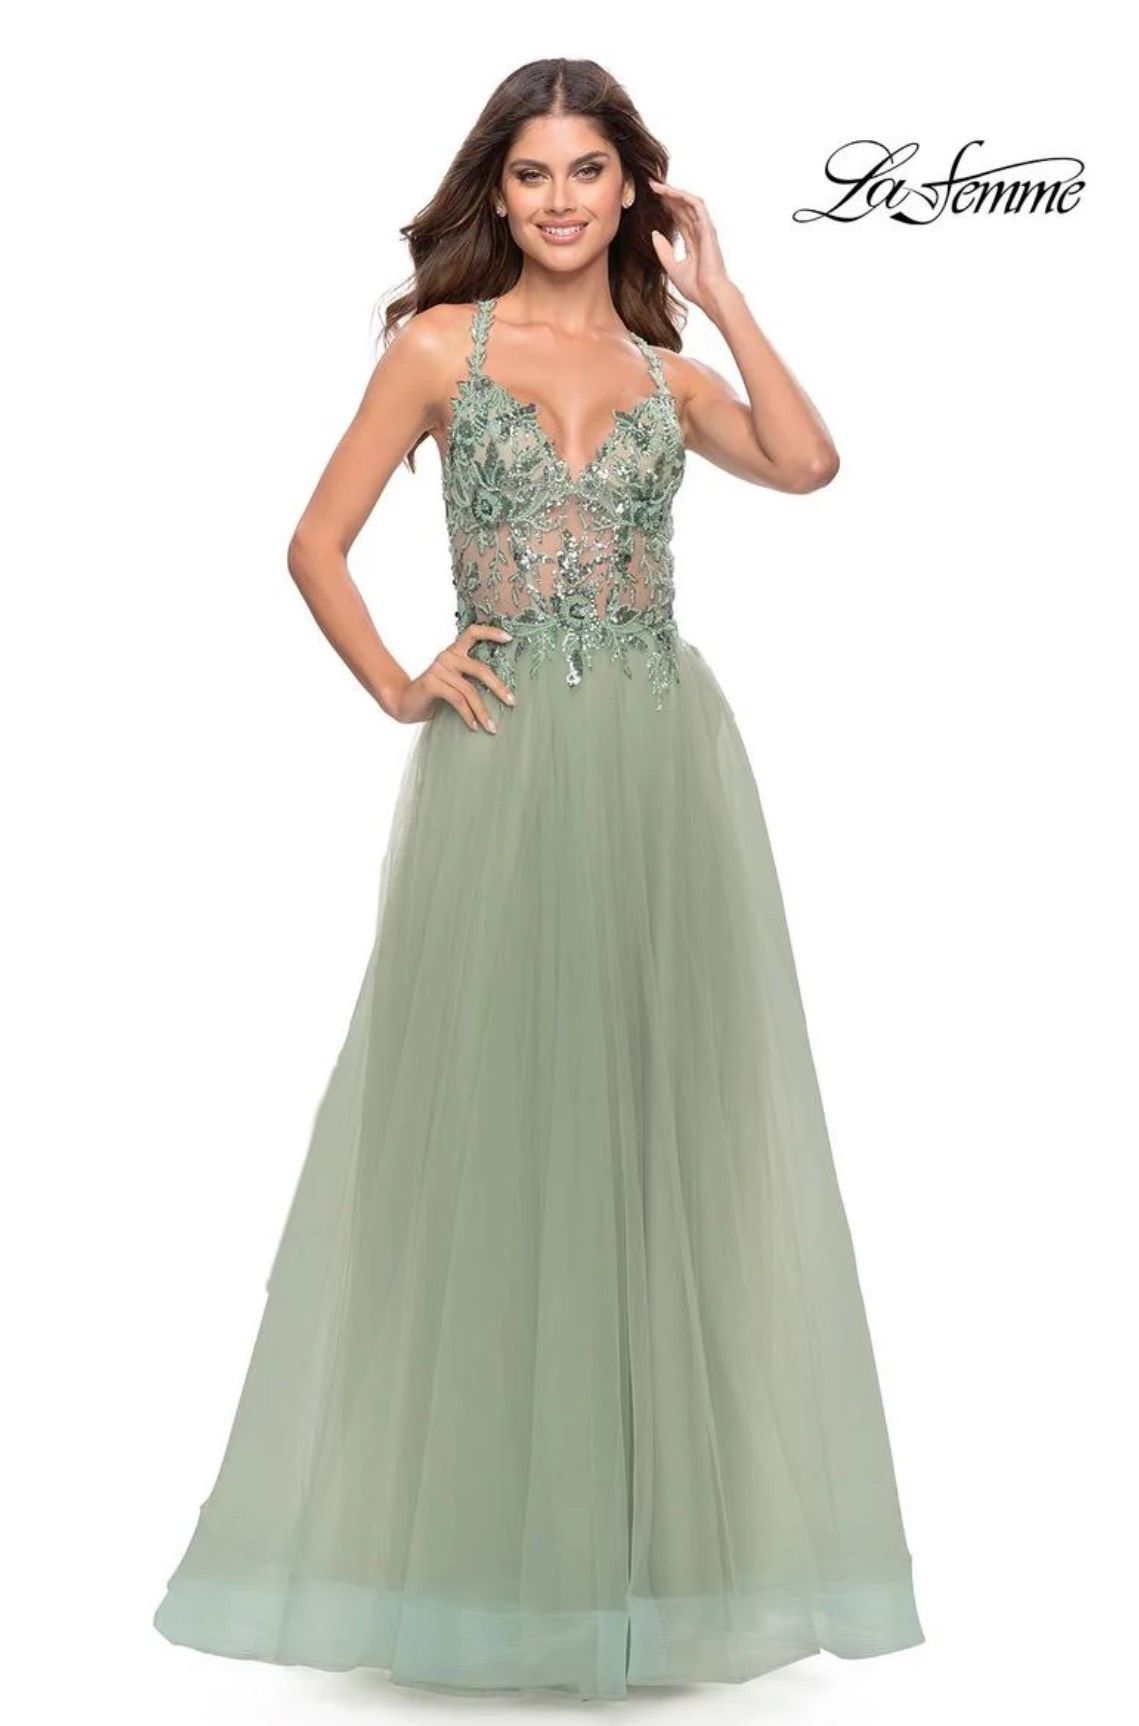 La Femme Size 4 Prom Plunge Sequined Light Green Side Slit Dress on Queenly